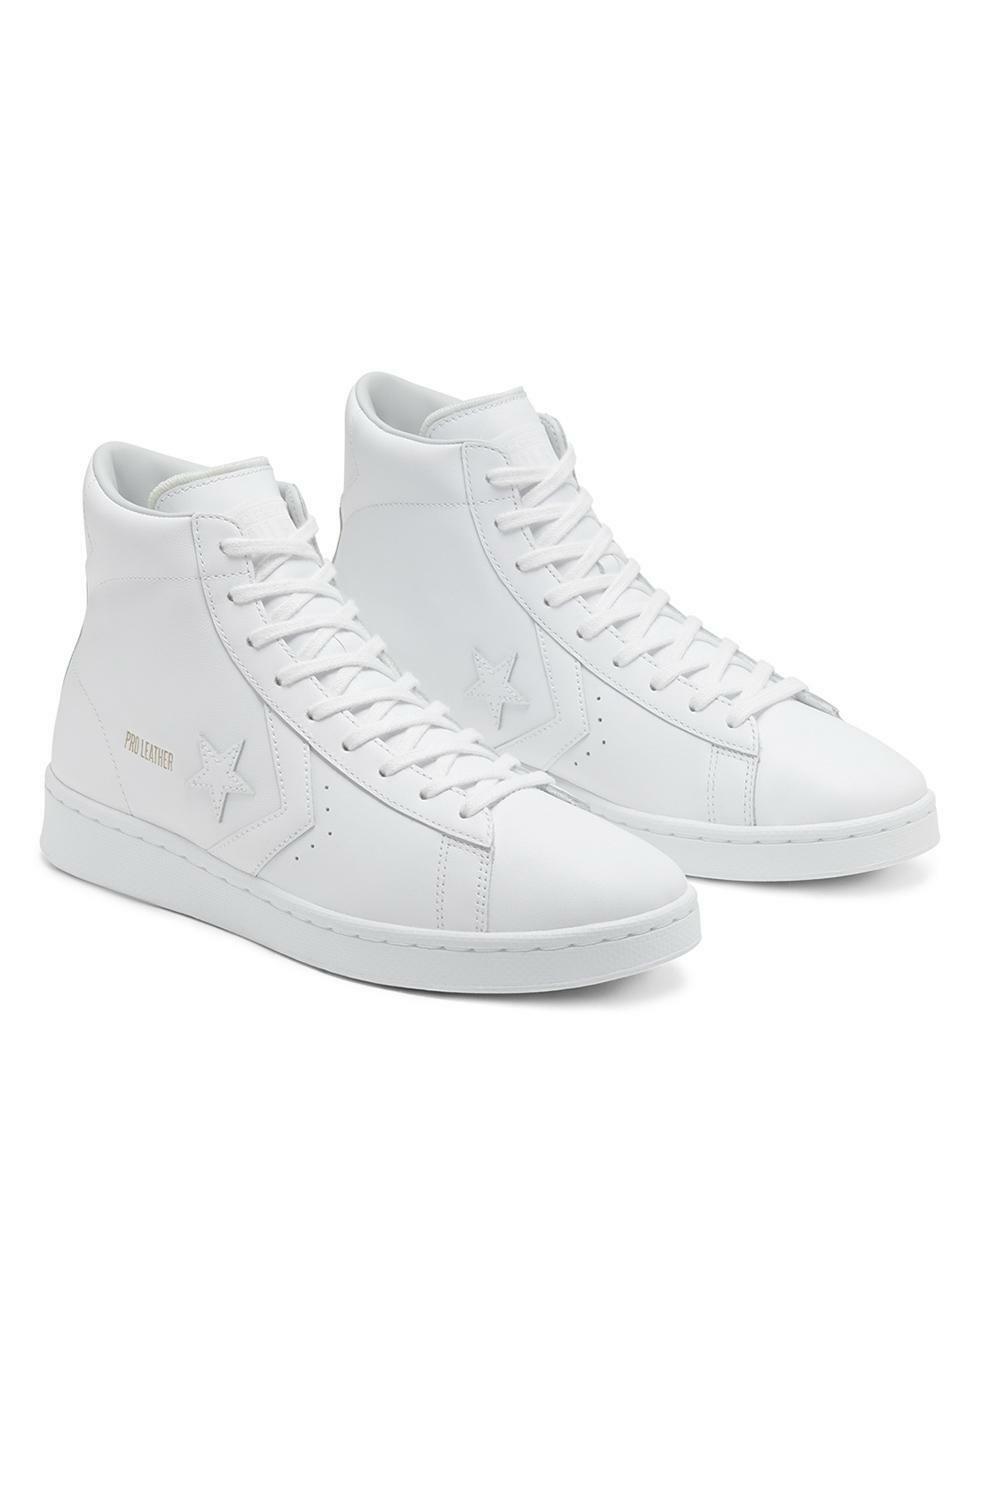 converse sneakers alta converse pro leather hi 166810c. da uomo, colore bianco